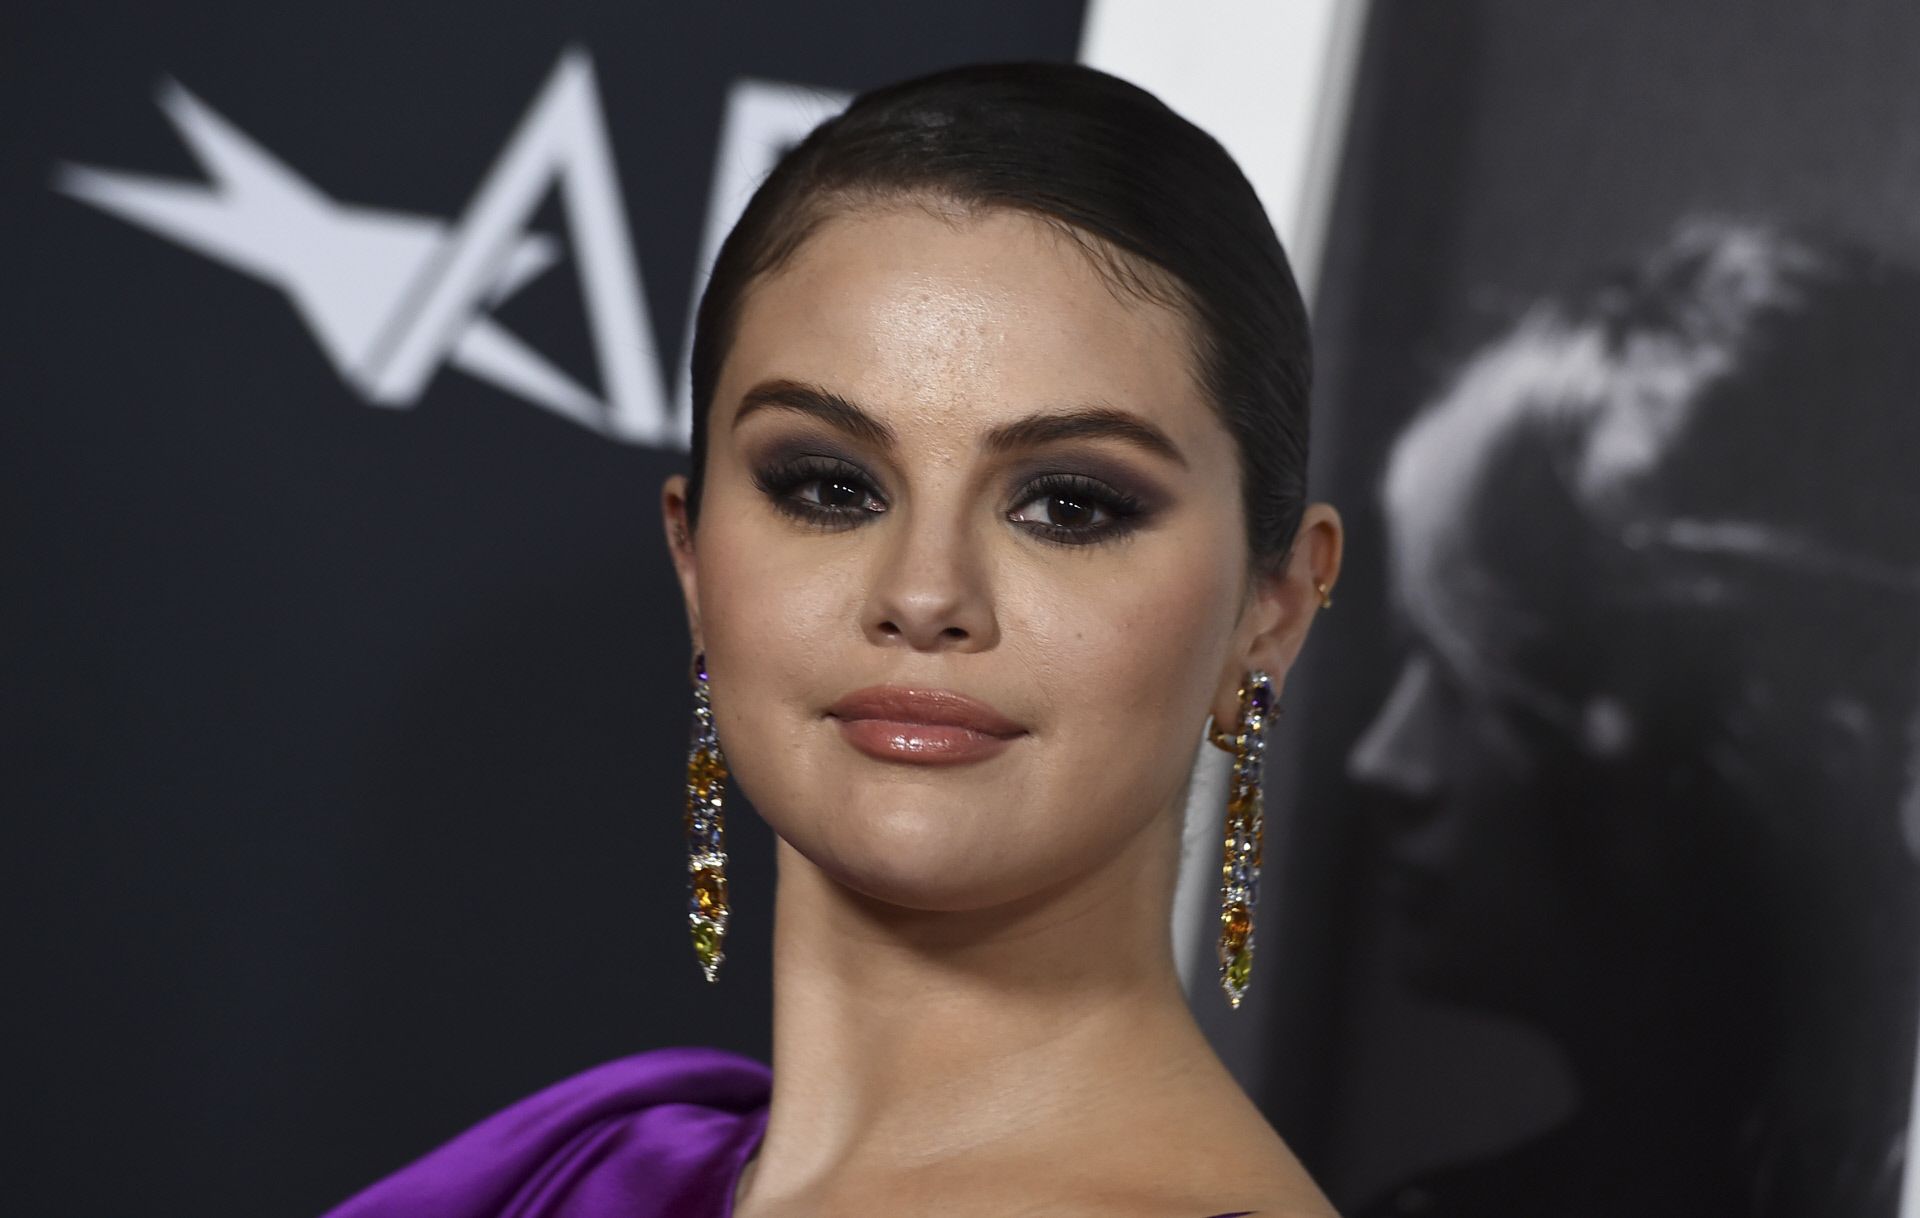 Selena Gomez: vestido lencero morado que realza sus curvas